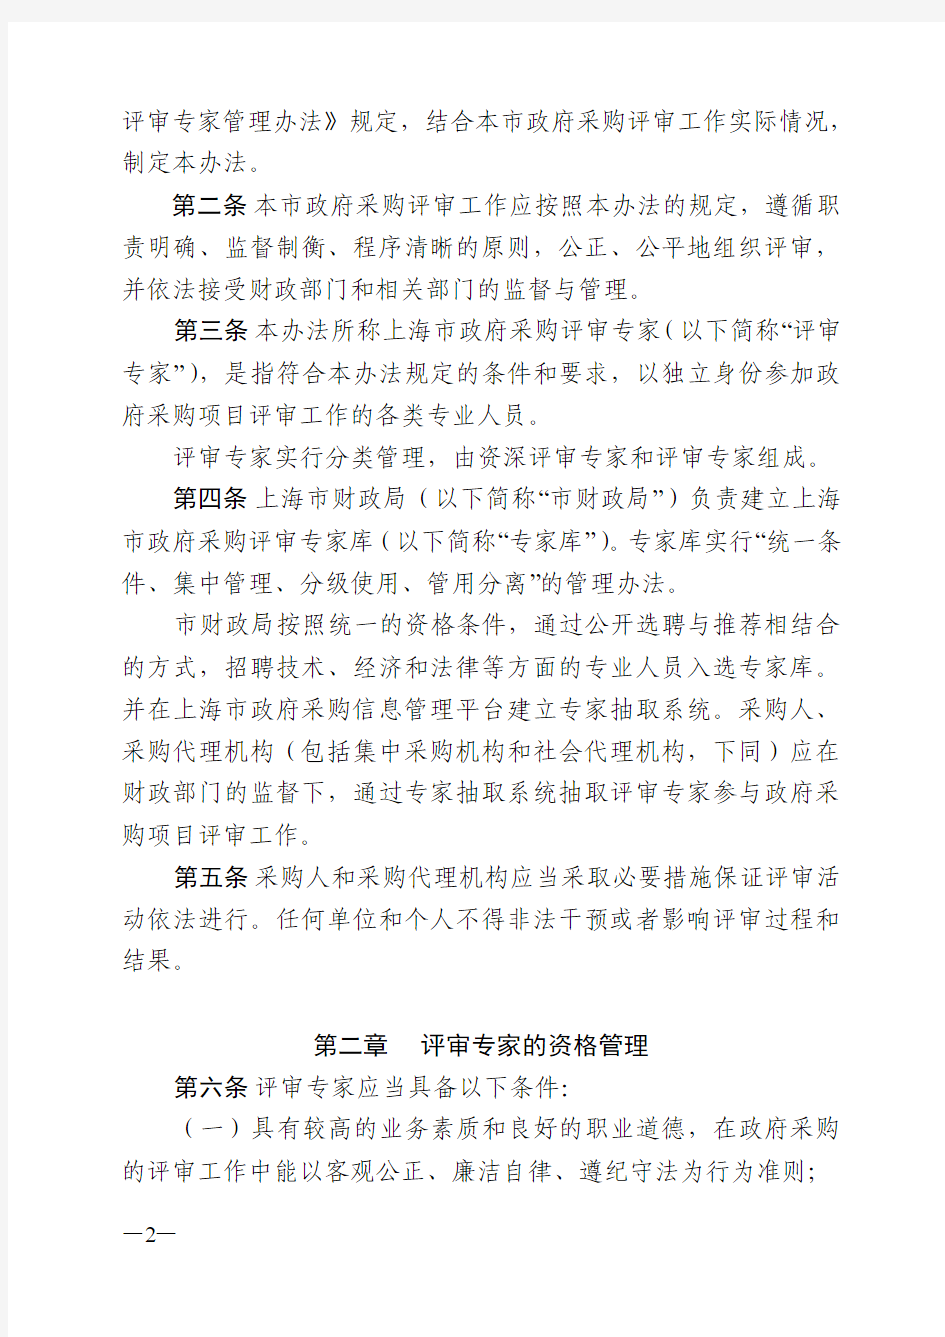 上海市政府采购评审专家和评审工作管理办法(沪财库[2012]30号)